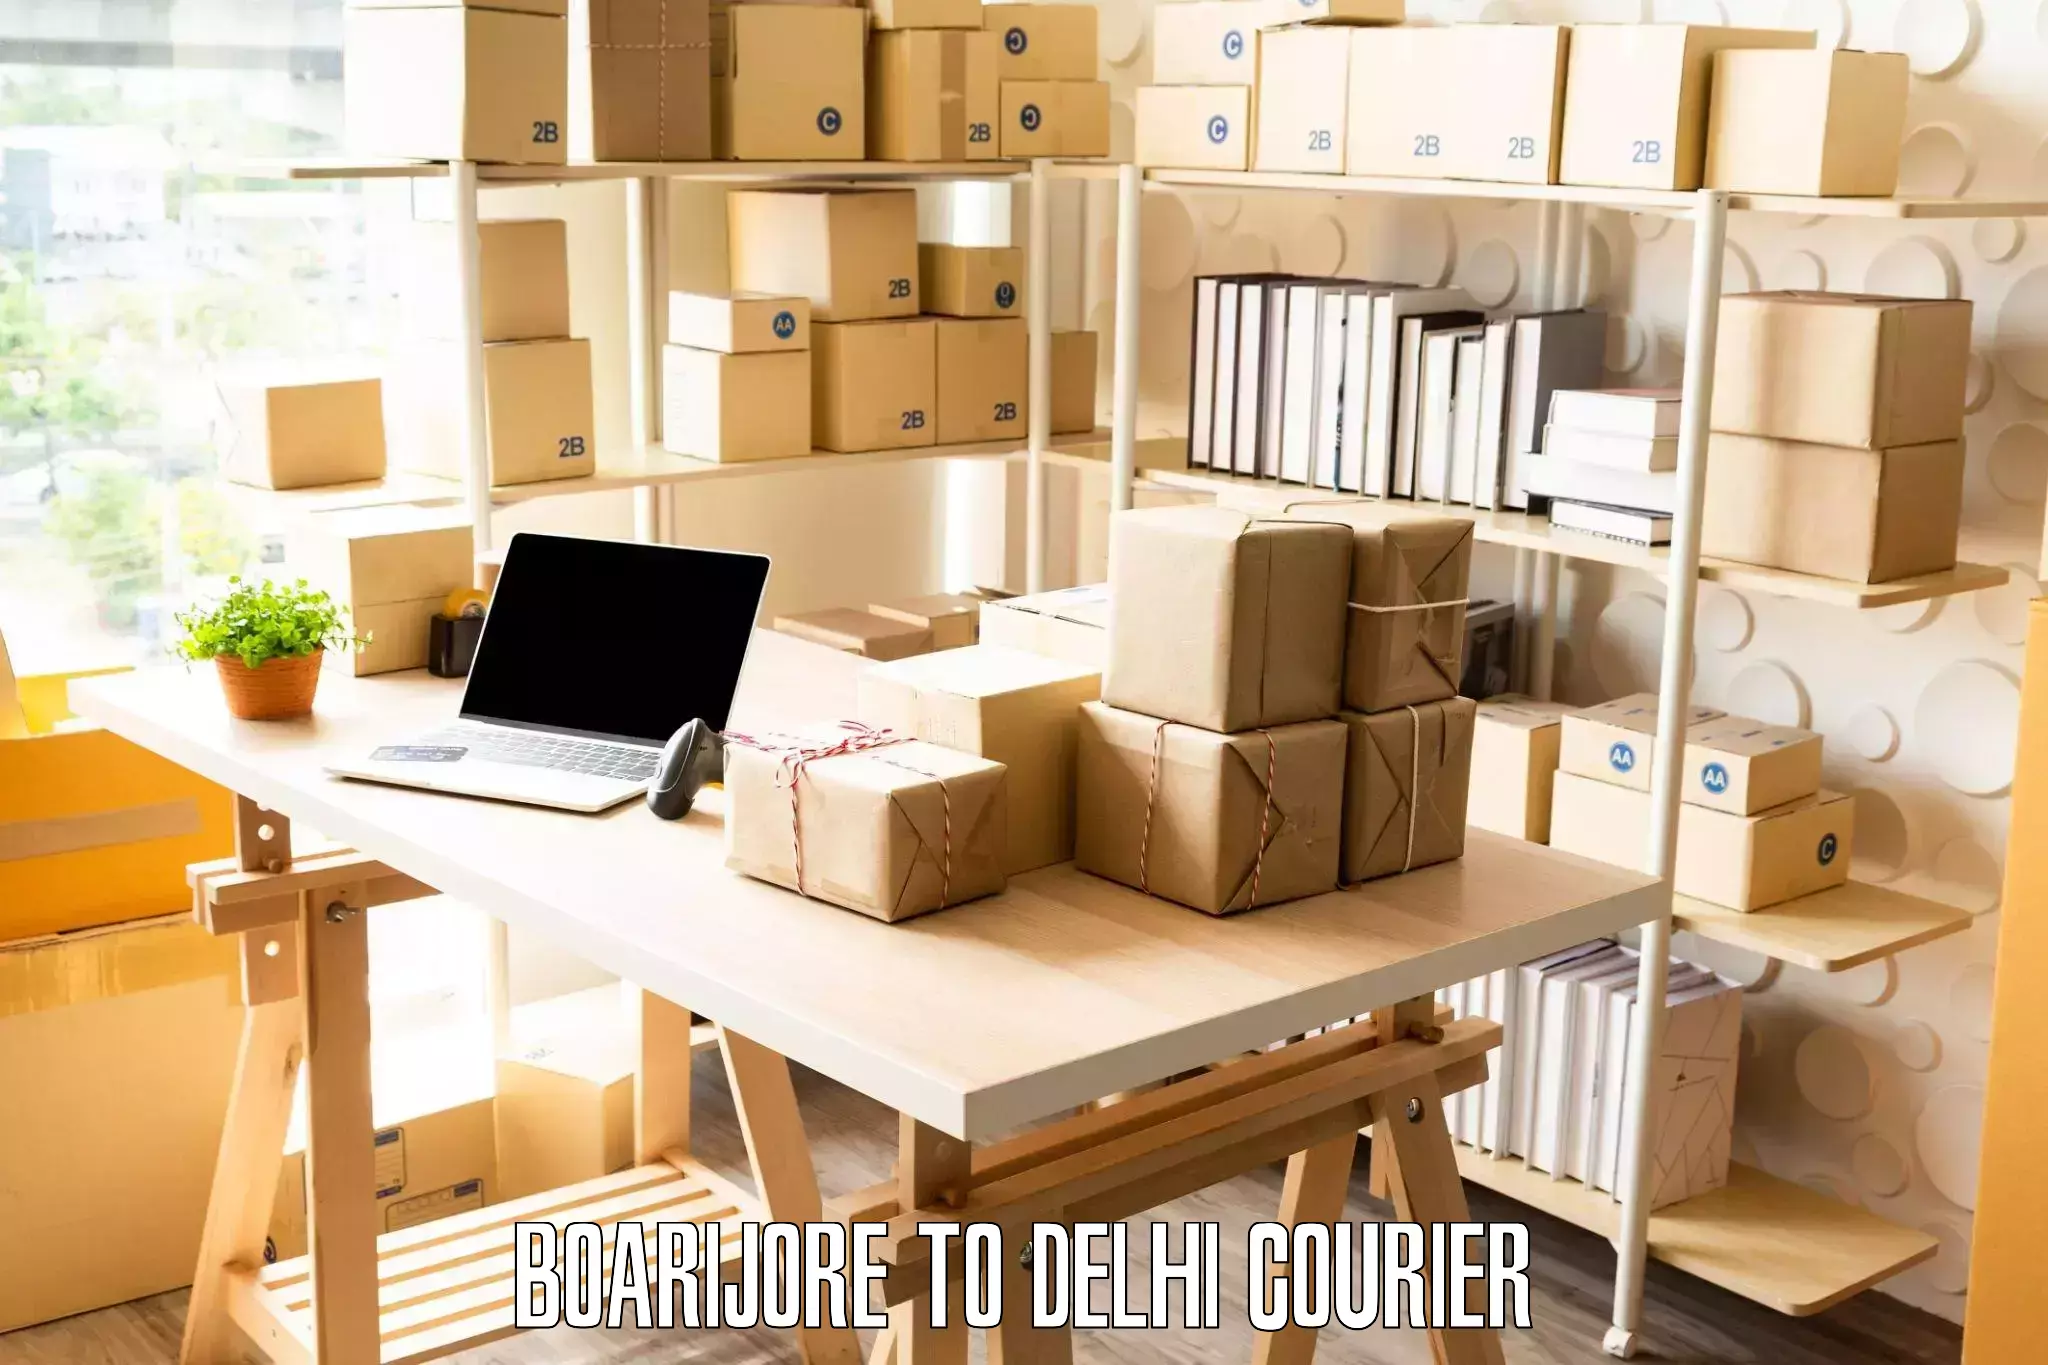 Quality furniture shipping in Boarijore to Jamia Hamdard New Delhi